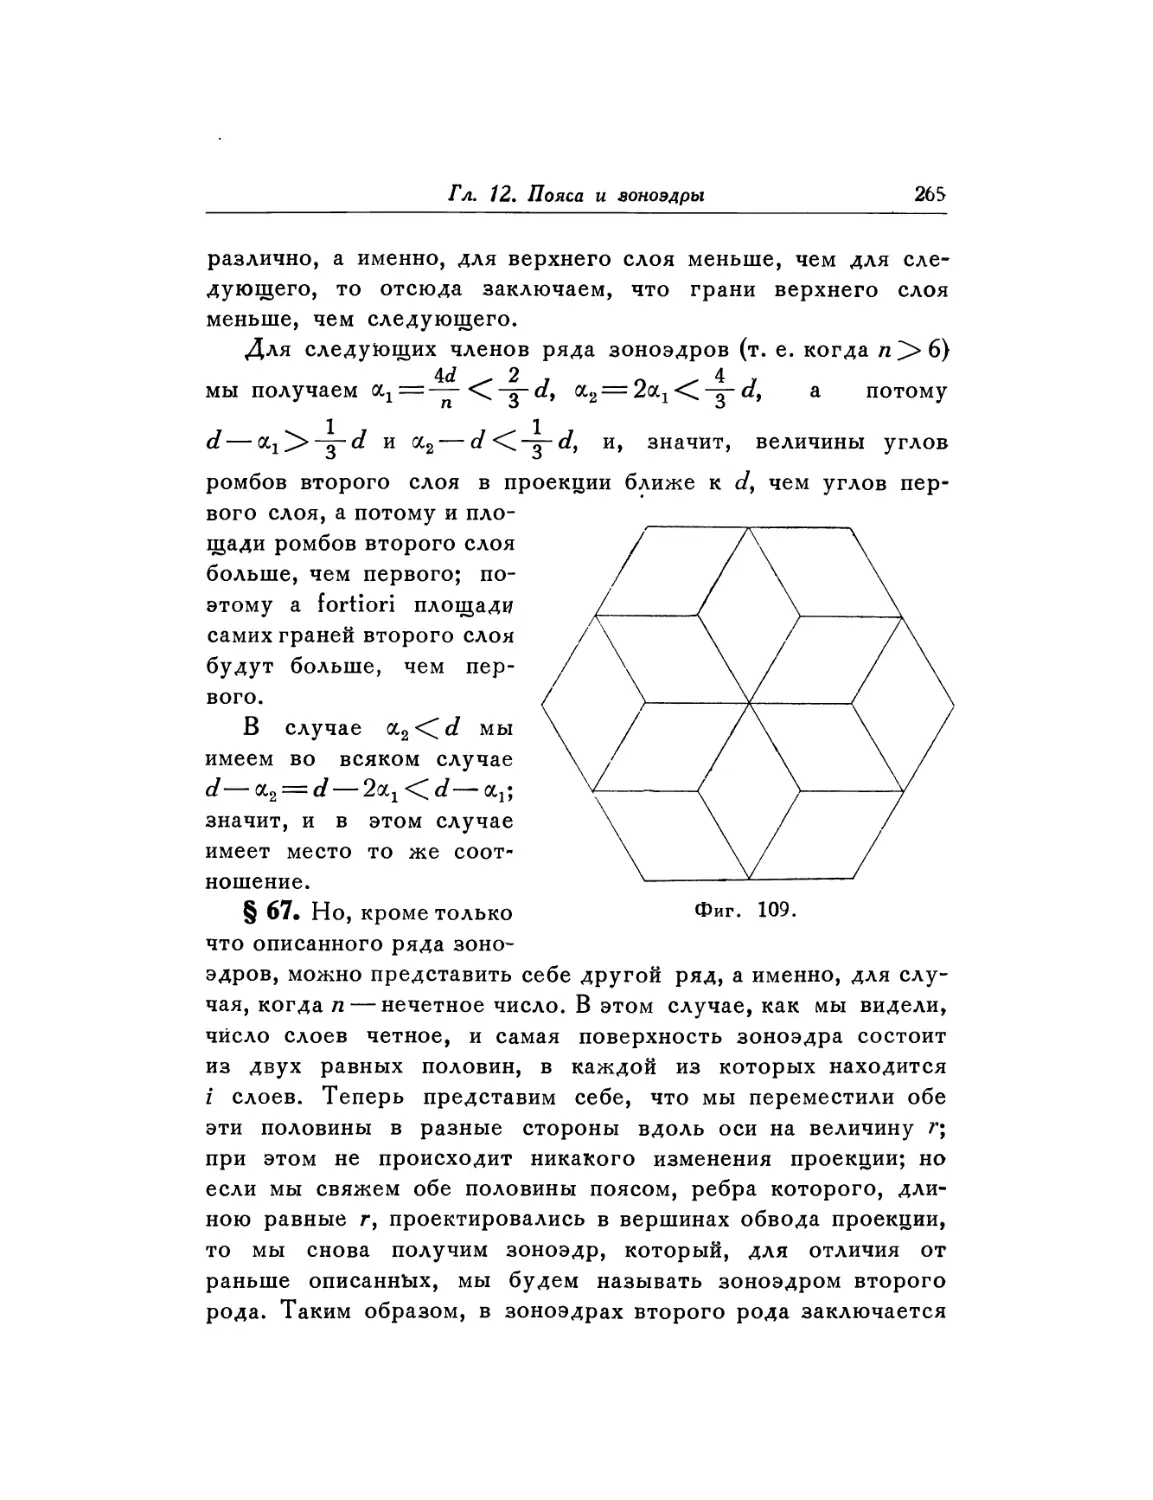 § 67. Полигональные зоноэдры второго рода